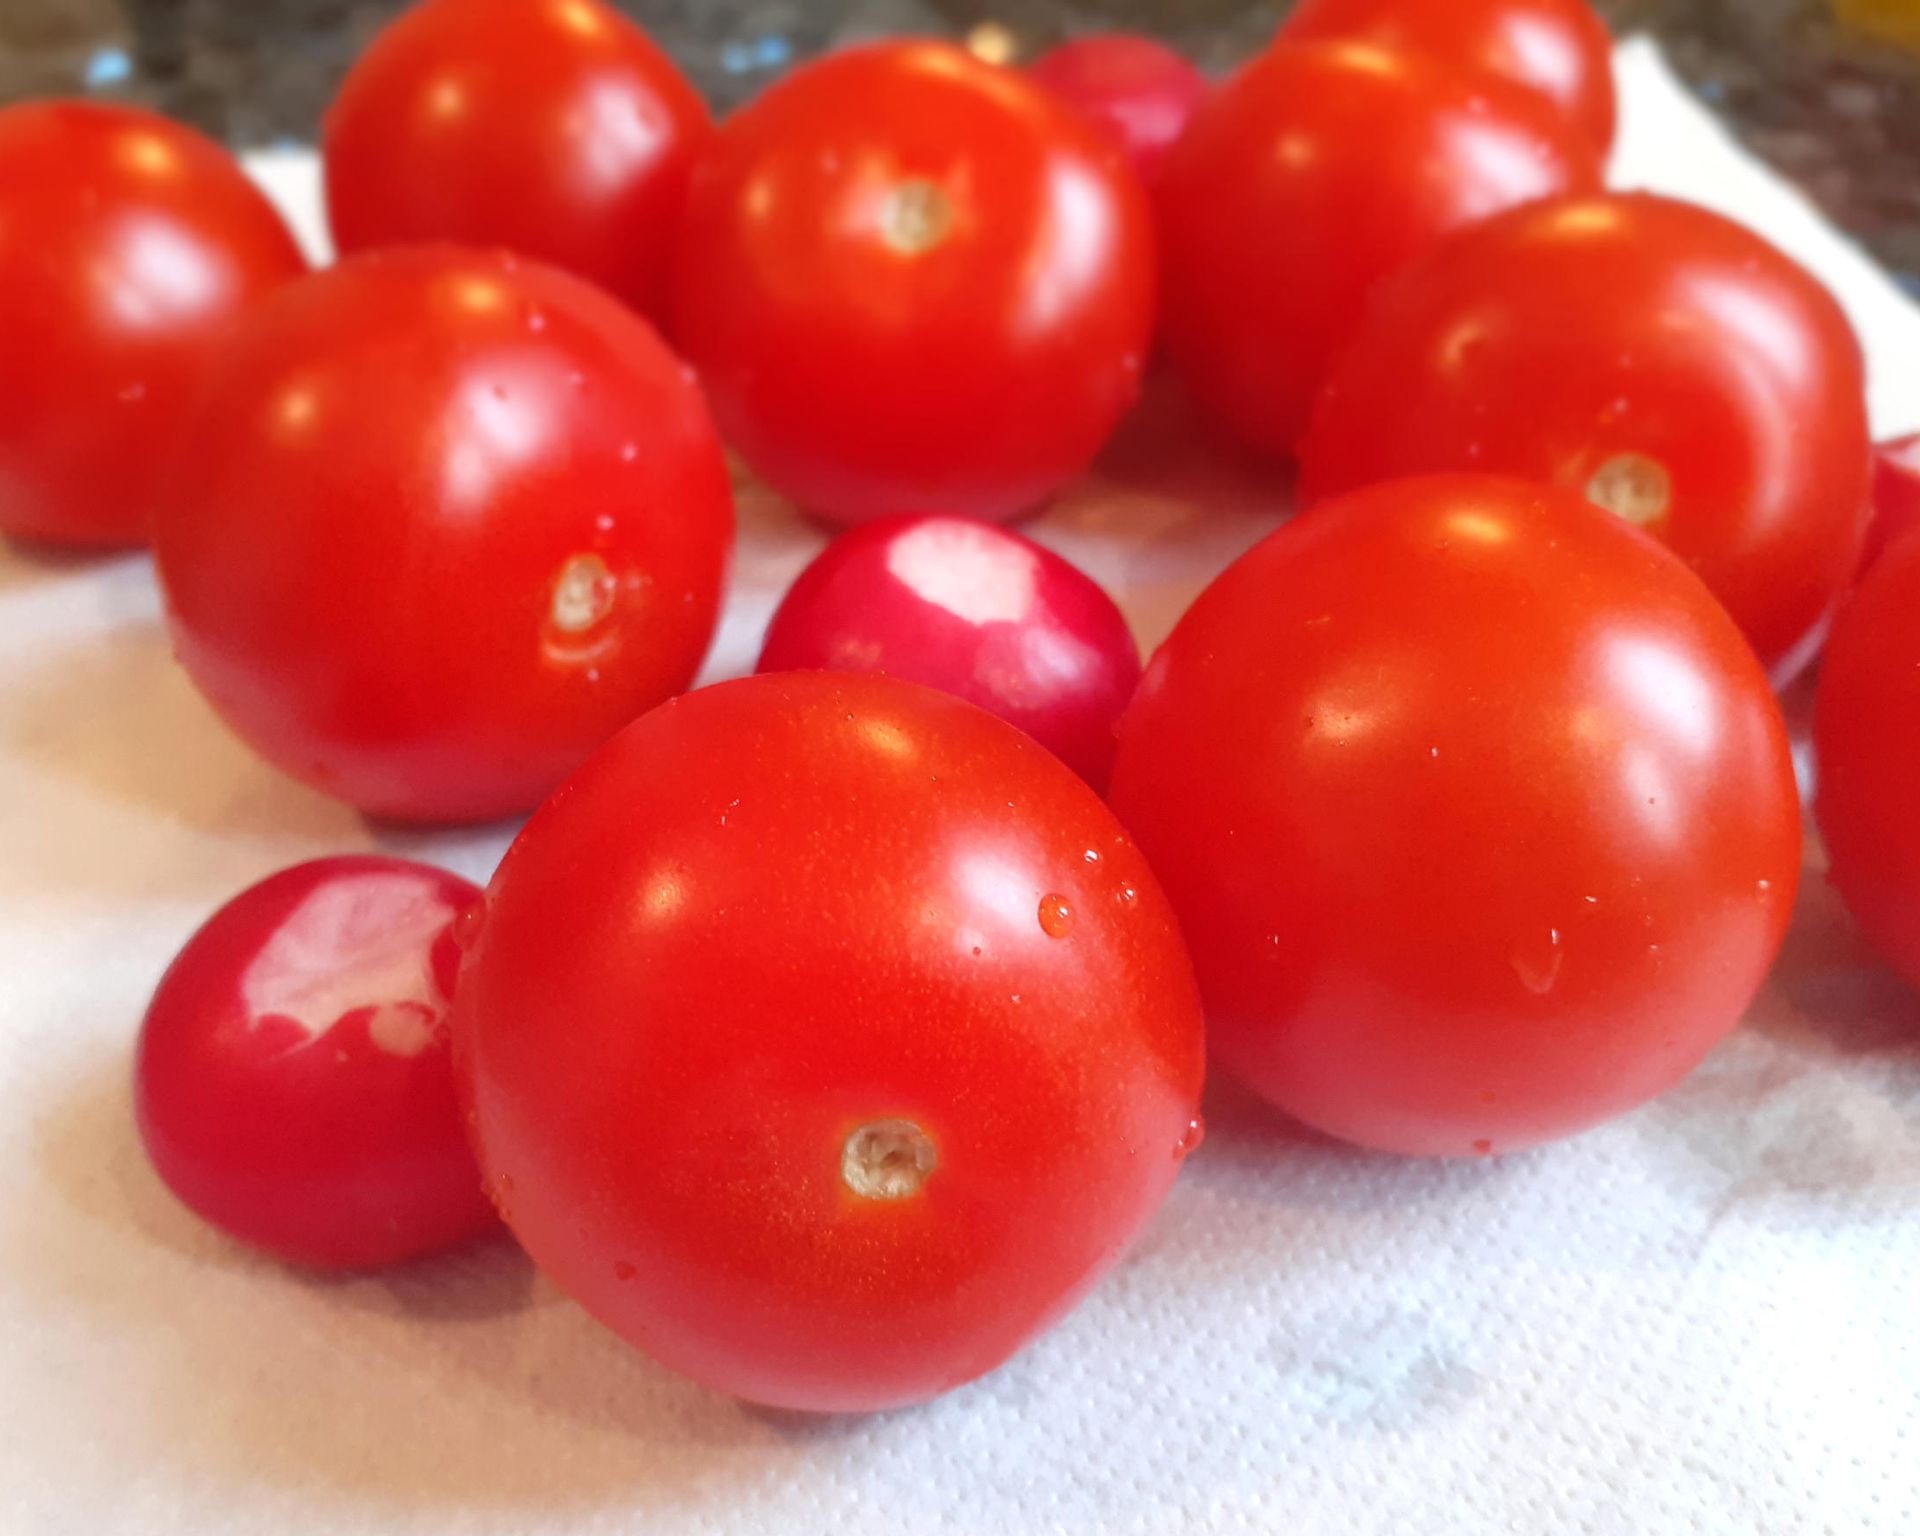 Čerstvo umyté paradajky na kuchynskej doske. Ešte sú mokré, sušia sa na papierovej utierke.